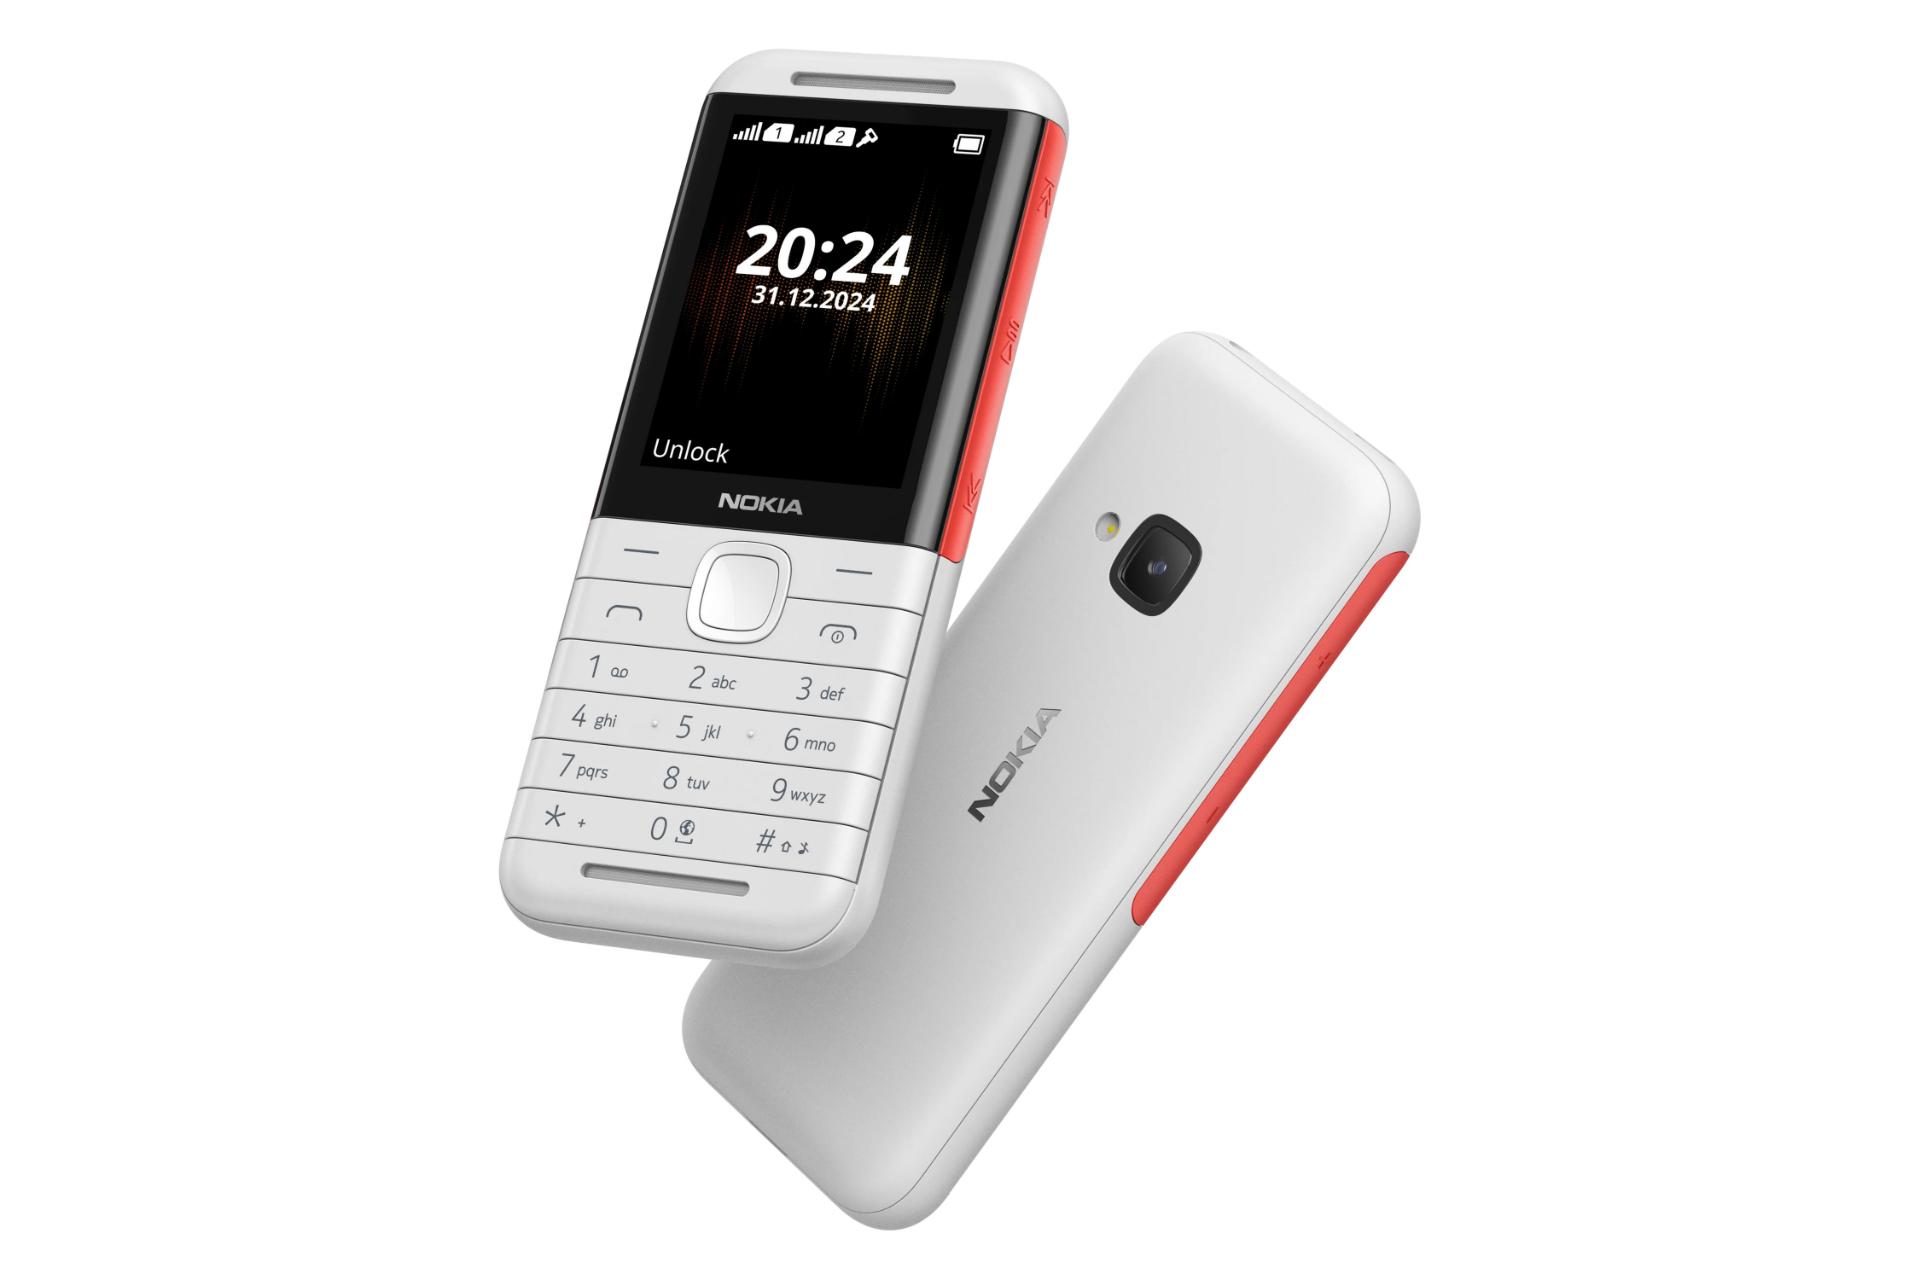 پنل جلو و پشت گوشی موبایل نوکیا 5310 نسخه 2024 سفید و قرمز / Nokia 5310 2024